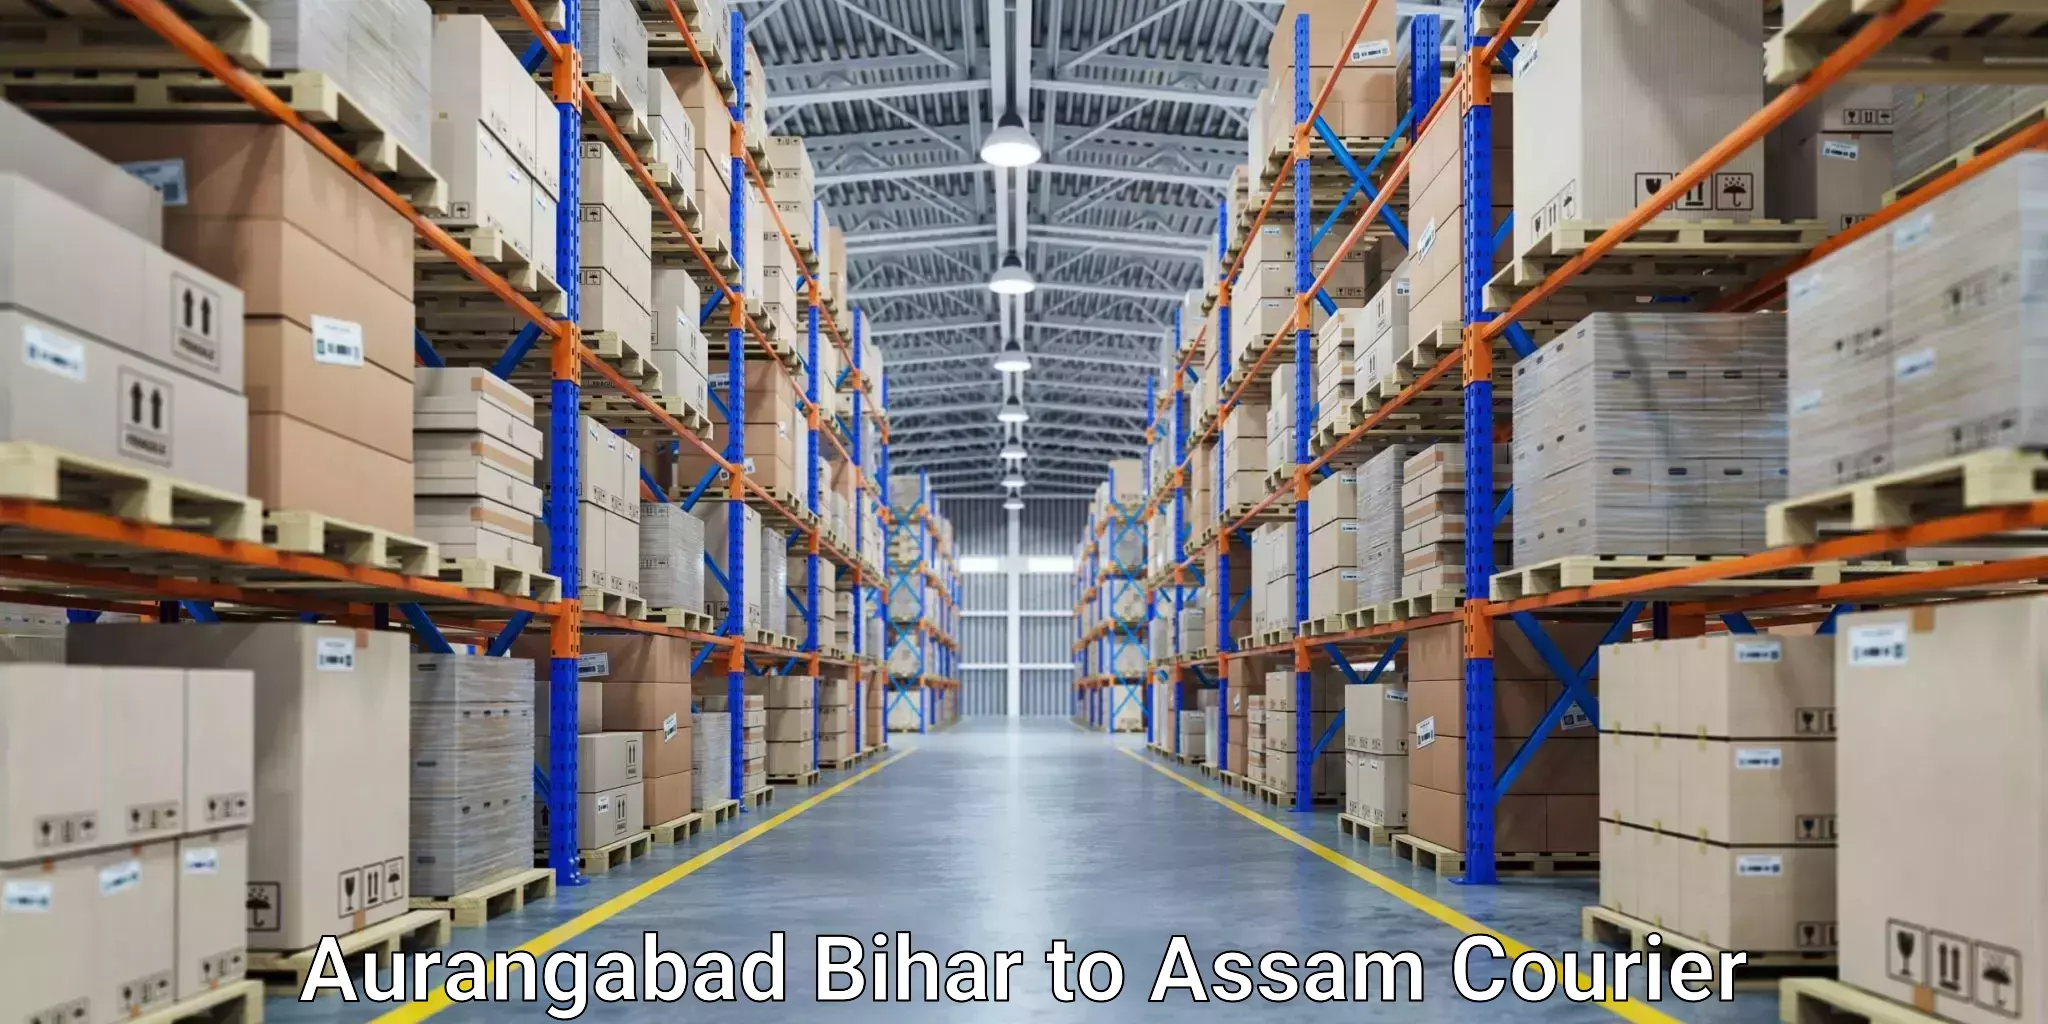 Parcel service for businesses Aurangabad Bihar to Golaghat